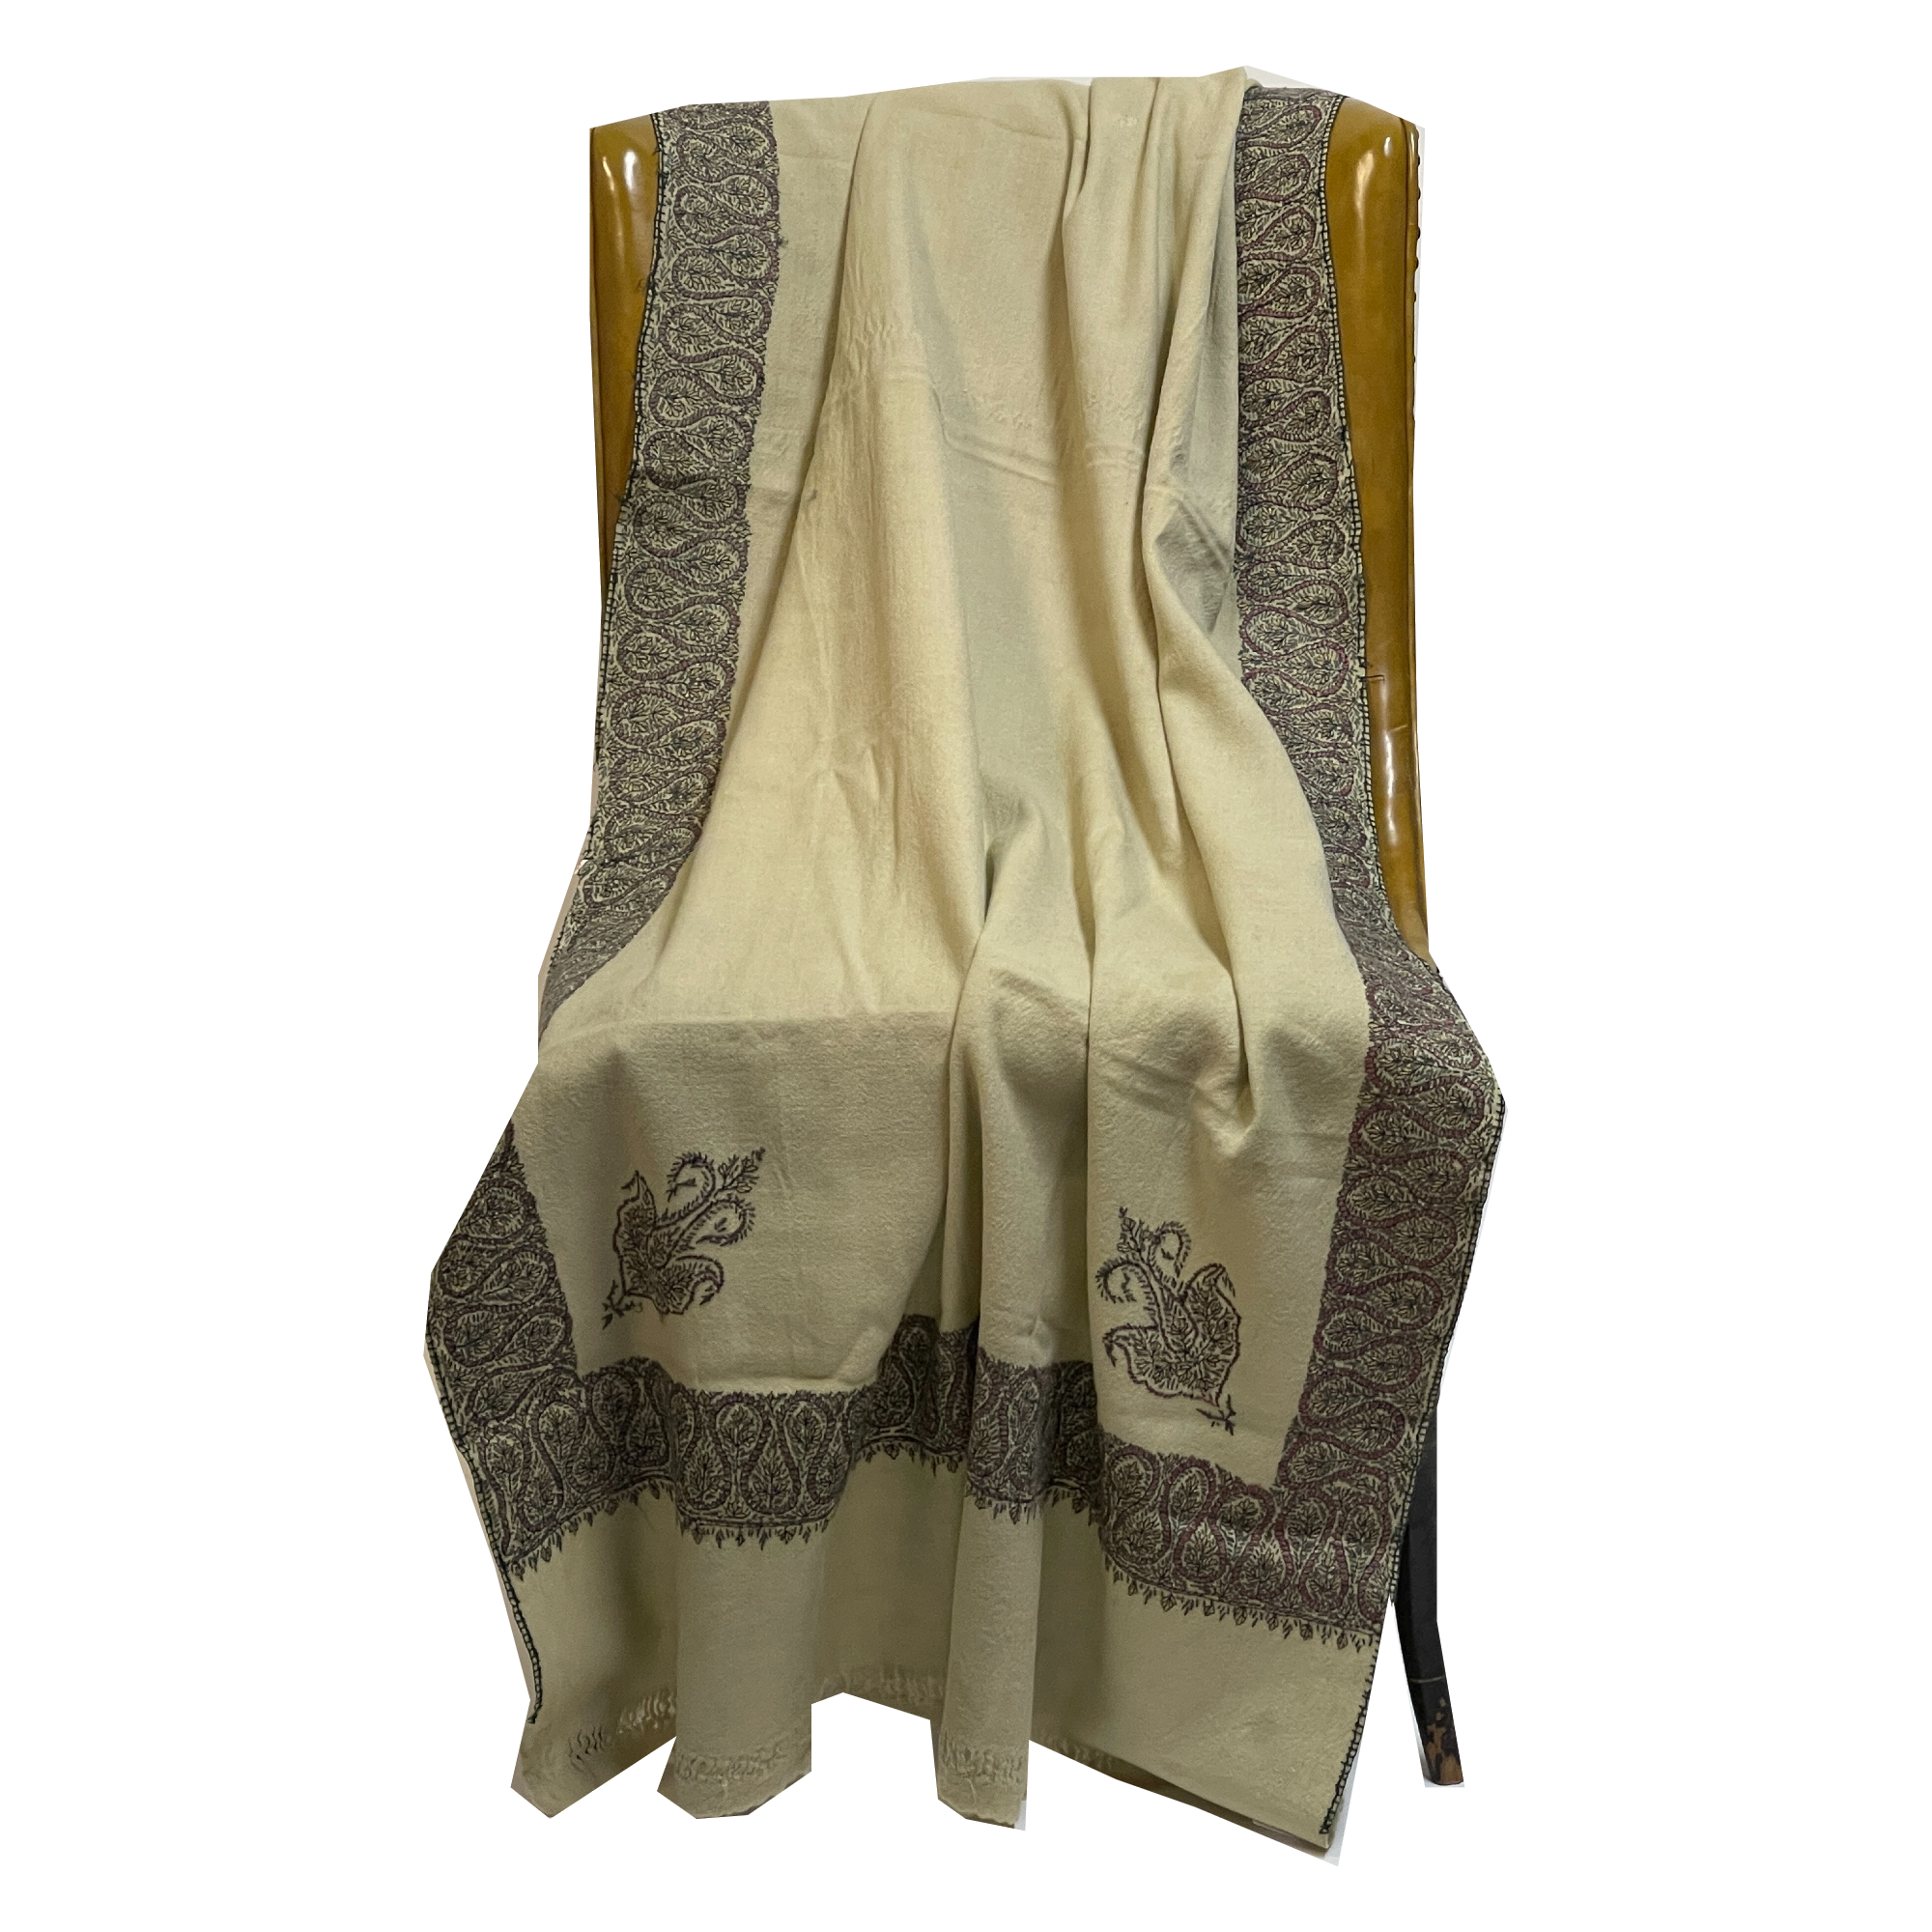 Vintage Handmade Kashmiri Shawls - 2 Styles - Vintage India NYC